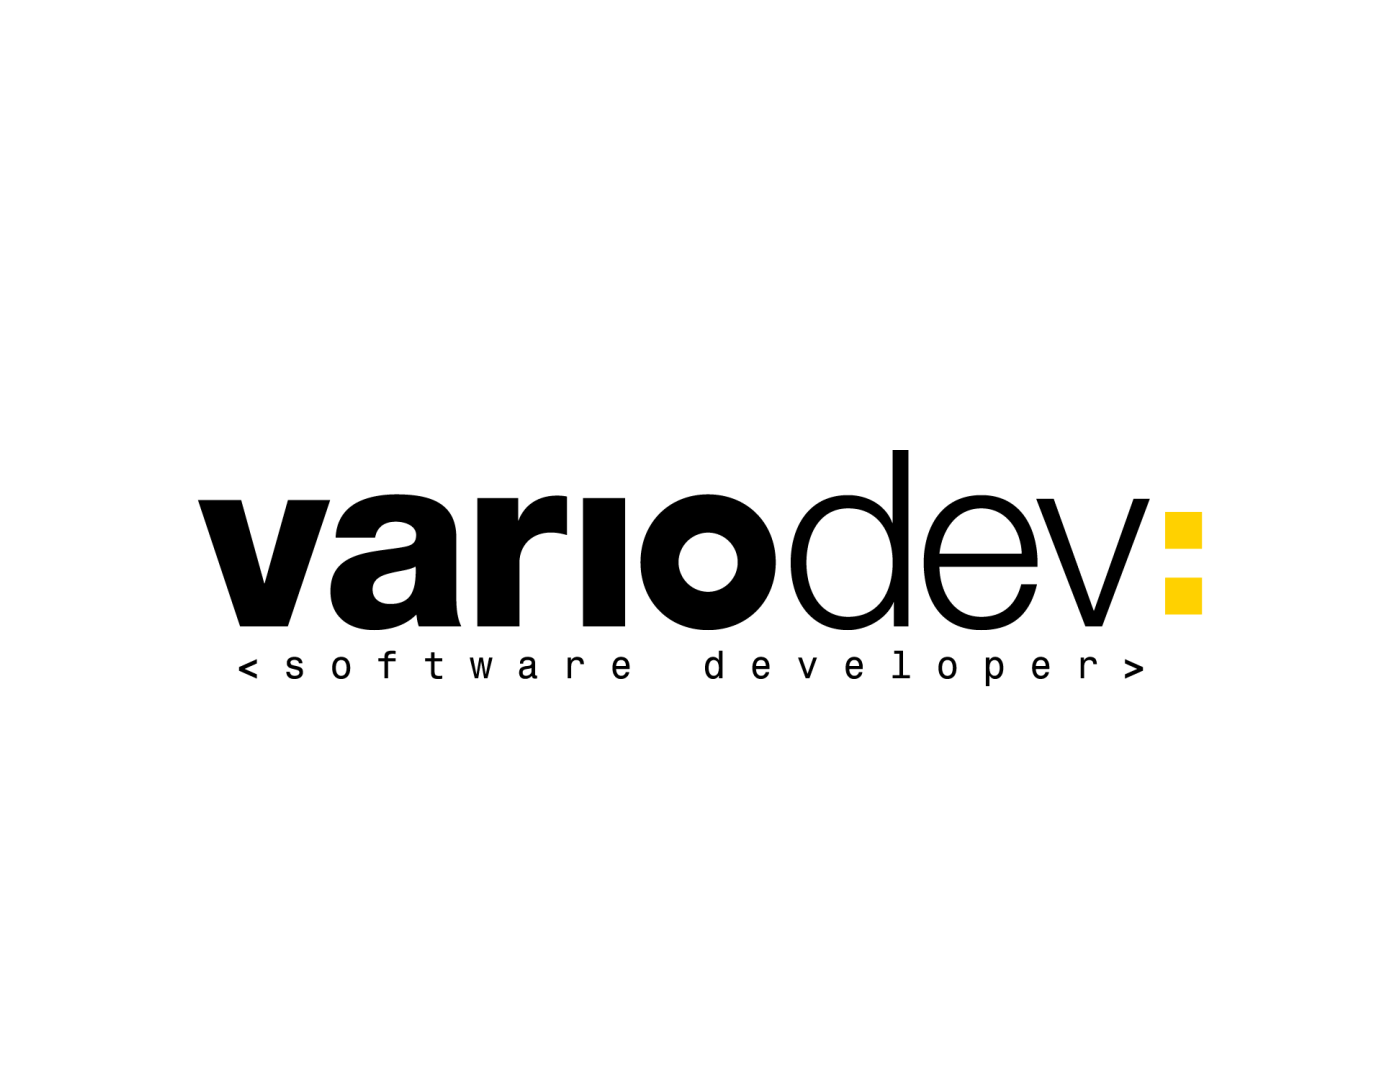 software developer developer logo Logo Design inspiration variodev minimal yellow helvetica